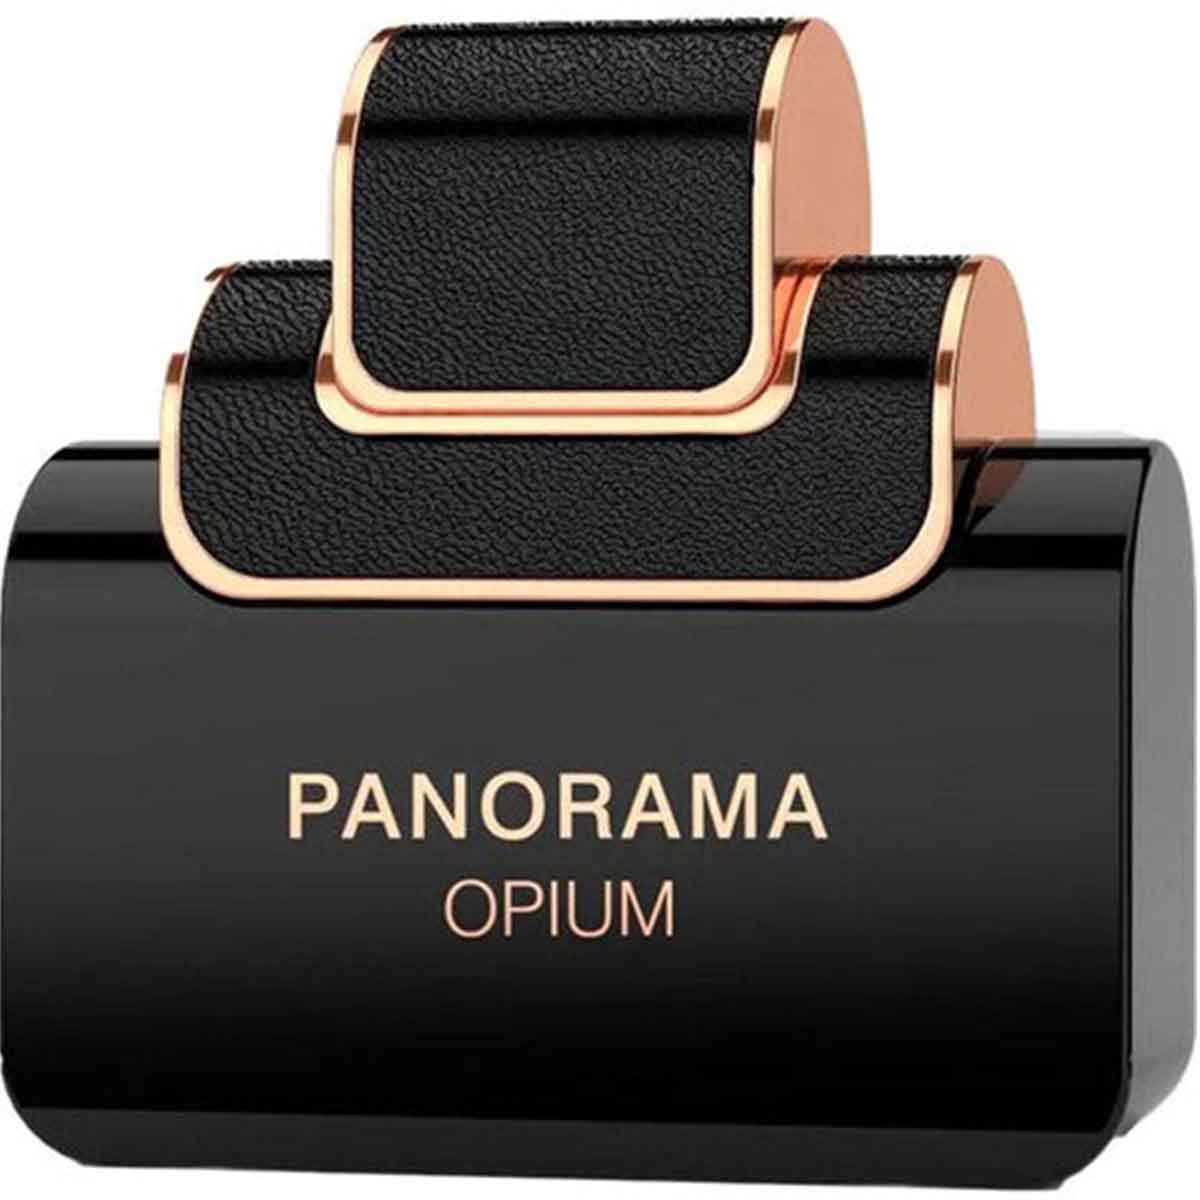 عطر و ادکلن زنانه پانوراما اپیوم برند امپر ( EMPER - PANORAMA OPIUM ) (کد5195)